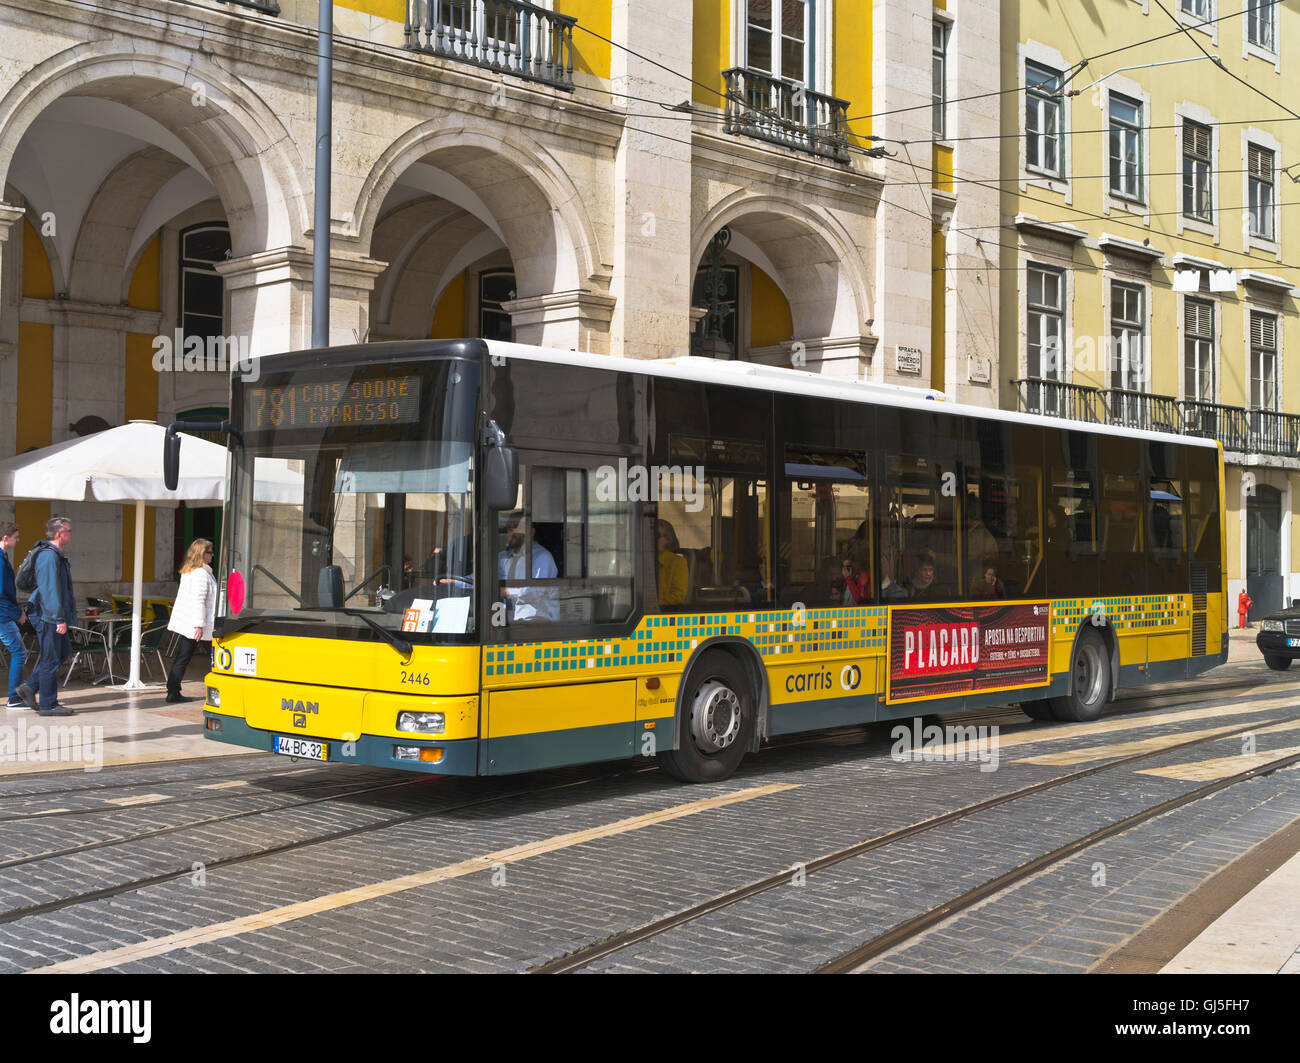 Dh Praca do Comercio LISBONA PORTOGALLO Lisbona singledecker trasporto bus single decker bus Foto Stock